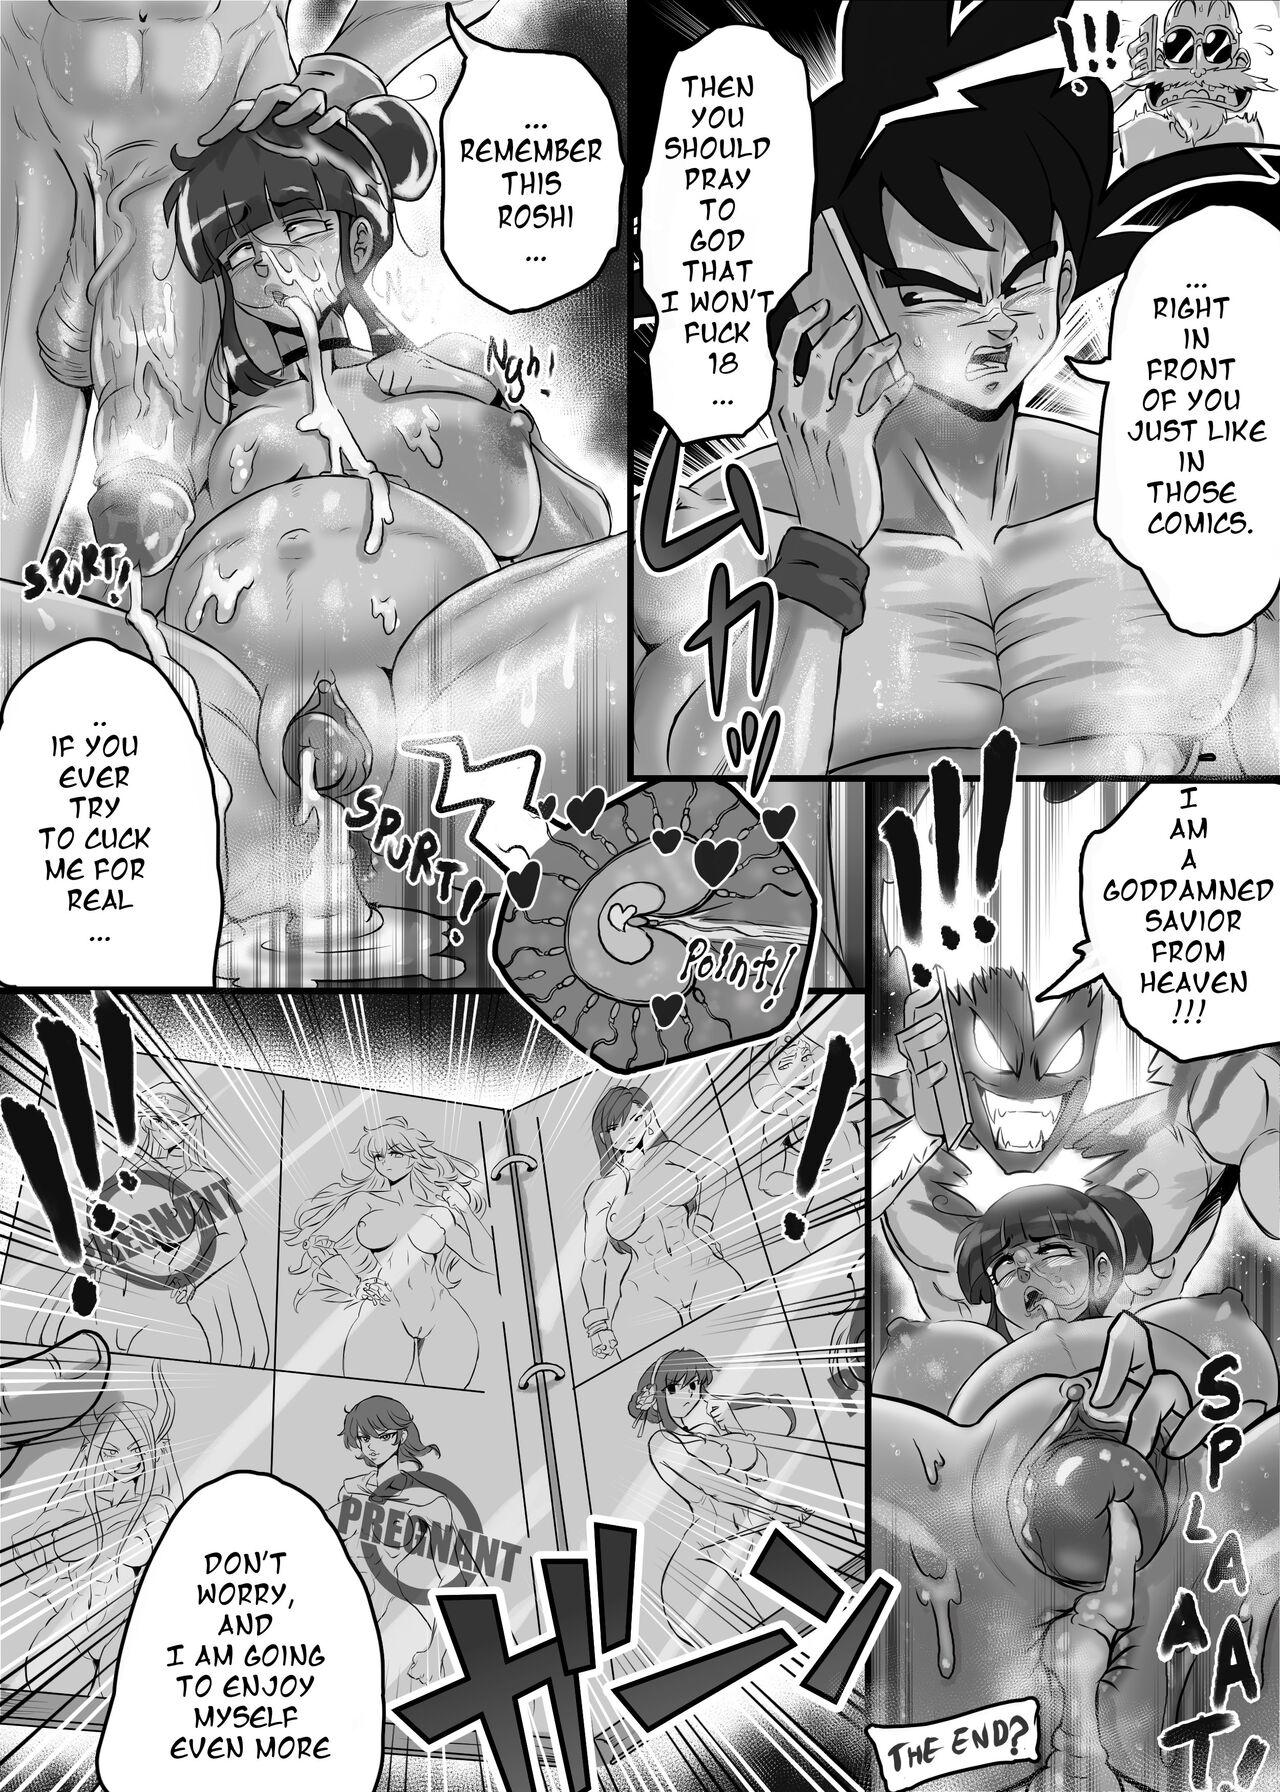 Hard Cock Ogi manga comics collection - Original Dragon ball z Dragon ball Dragon ball super Tribbing - Page 7